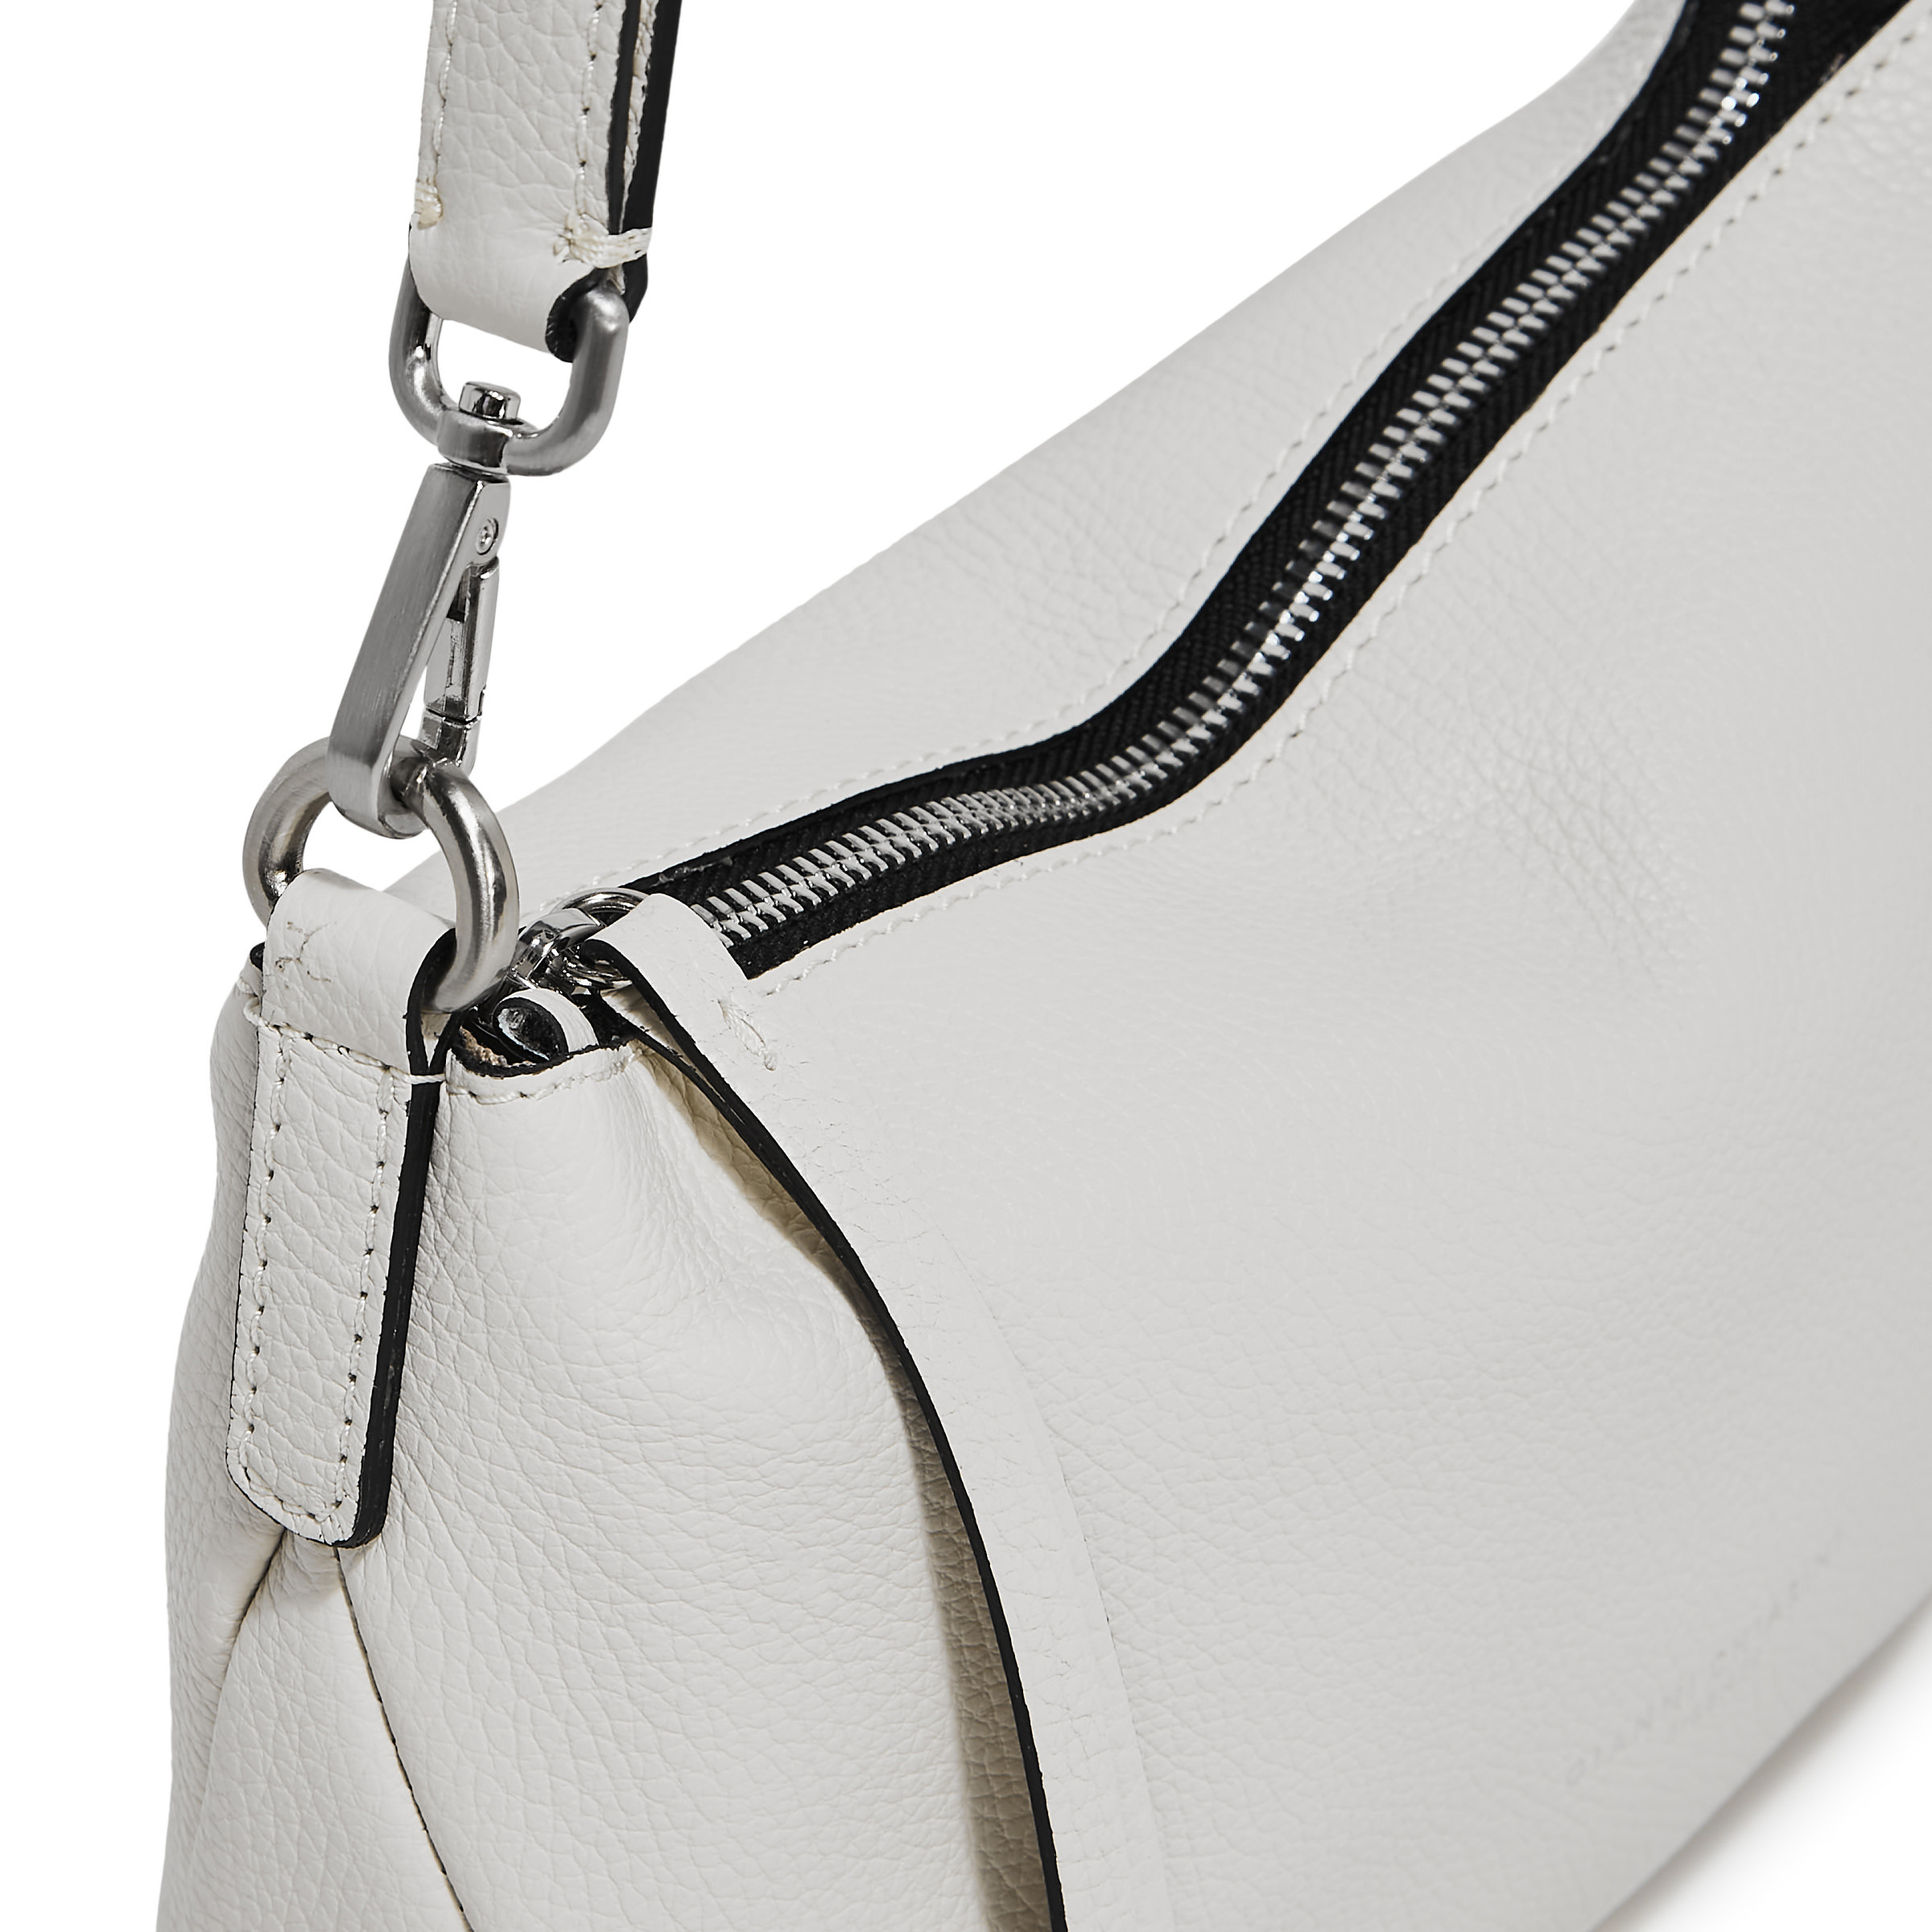 Gianni Chiarini - Nadia Leather bag, White, large image number 4